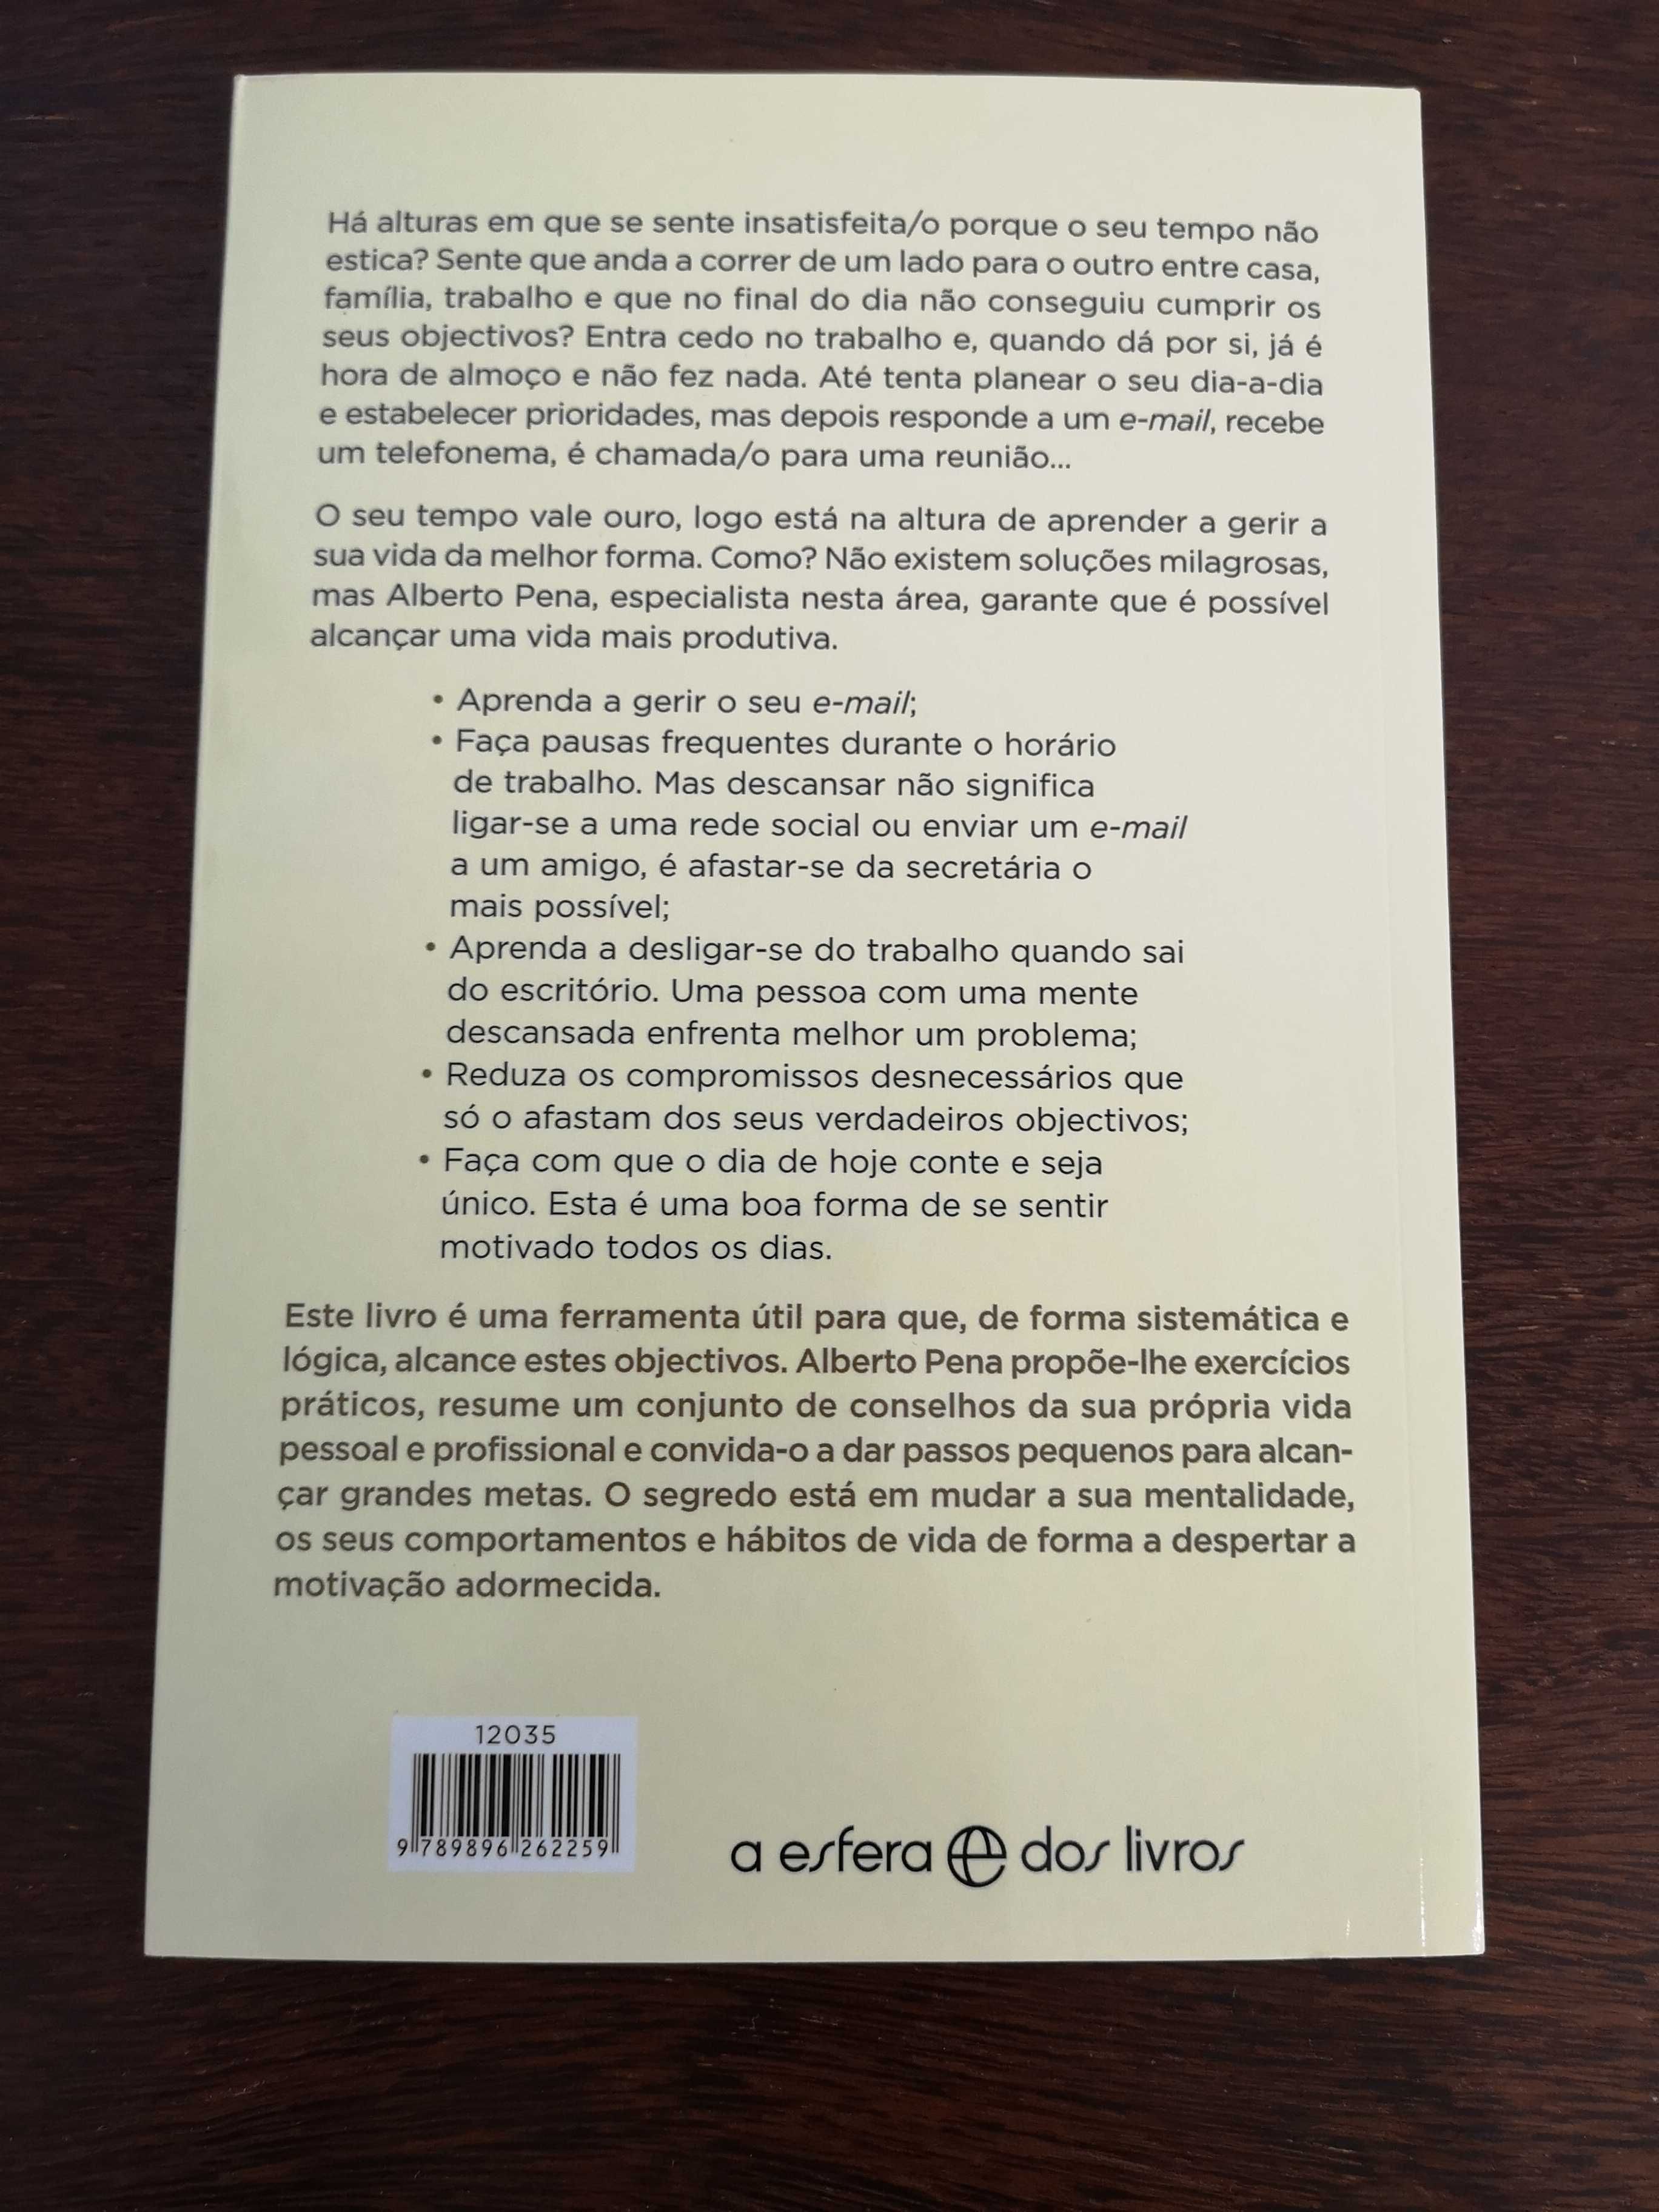 Livro O Seu Tempo Vale Ouro - NOVO - PORTES GRáTIS - 6€